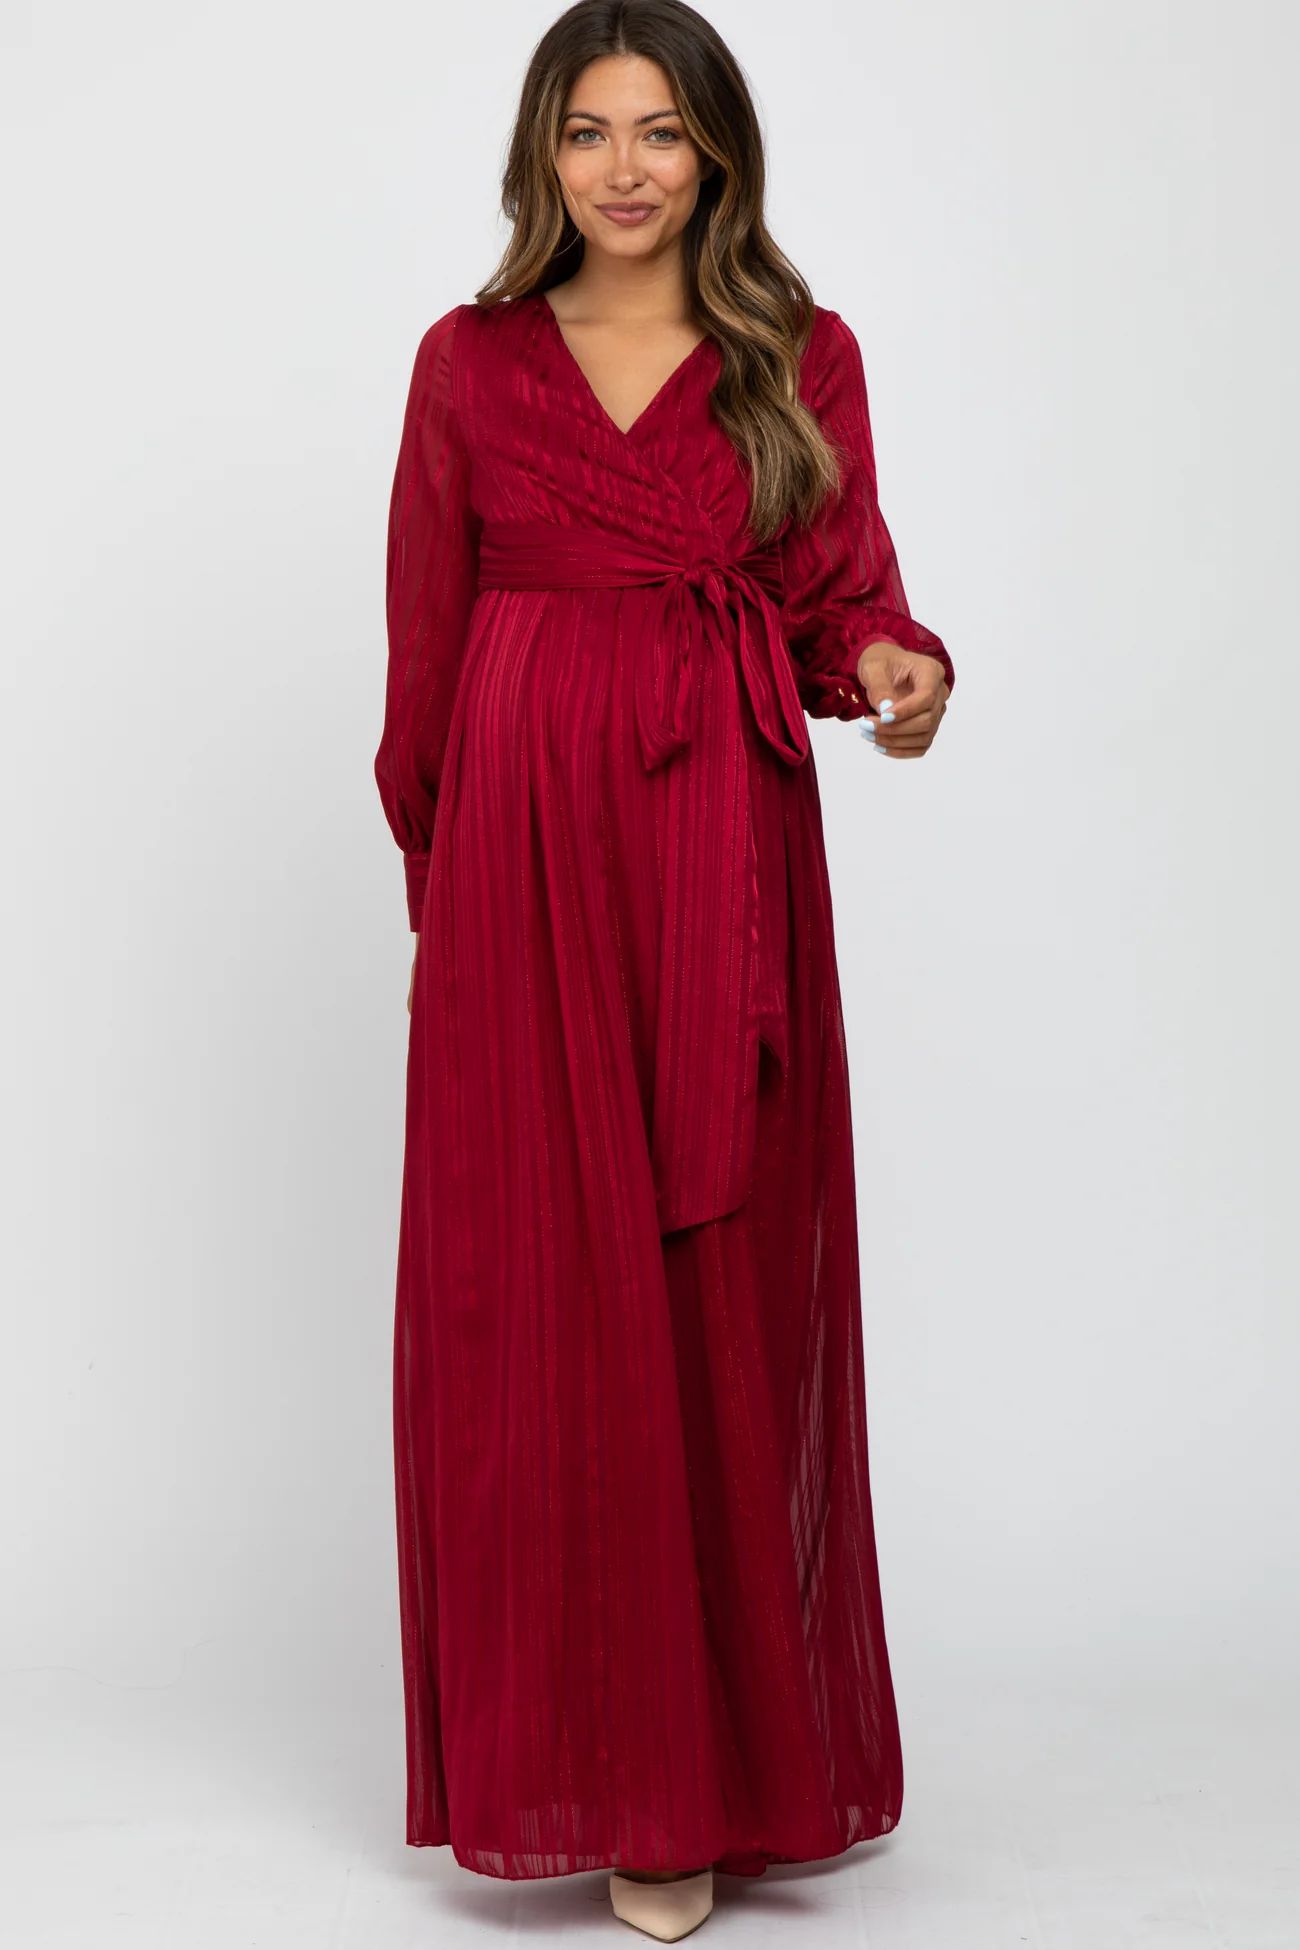 Burgundy Metallic Striped Chiffon Maternity Maxi Dress | PinkBlush Maternity